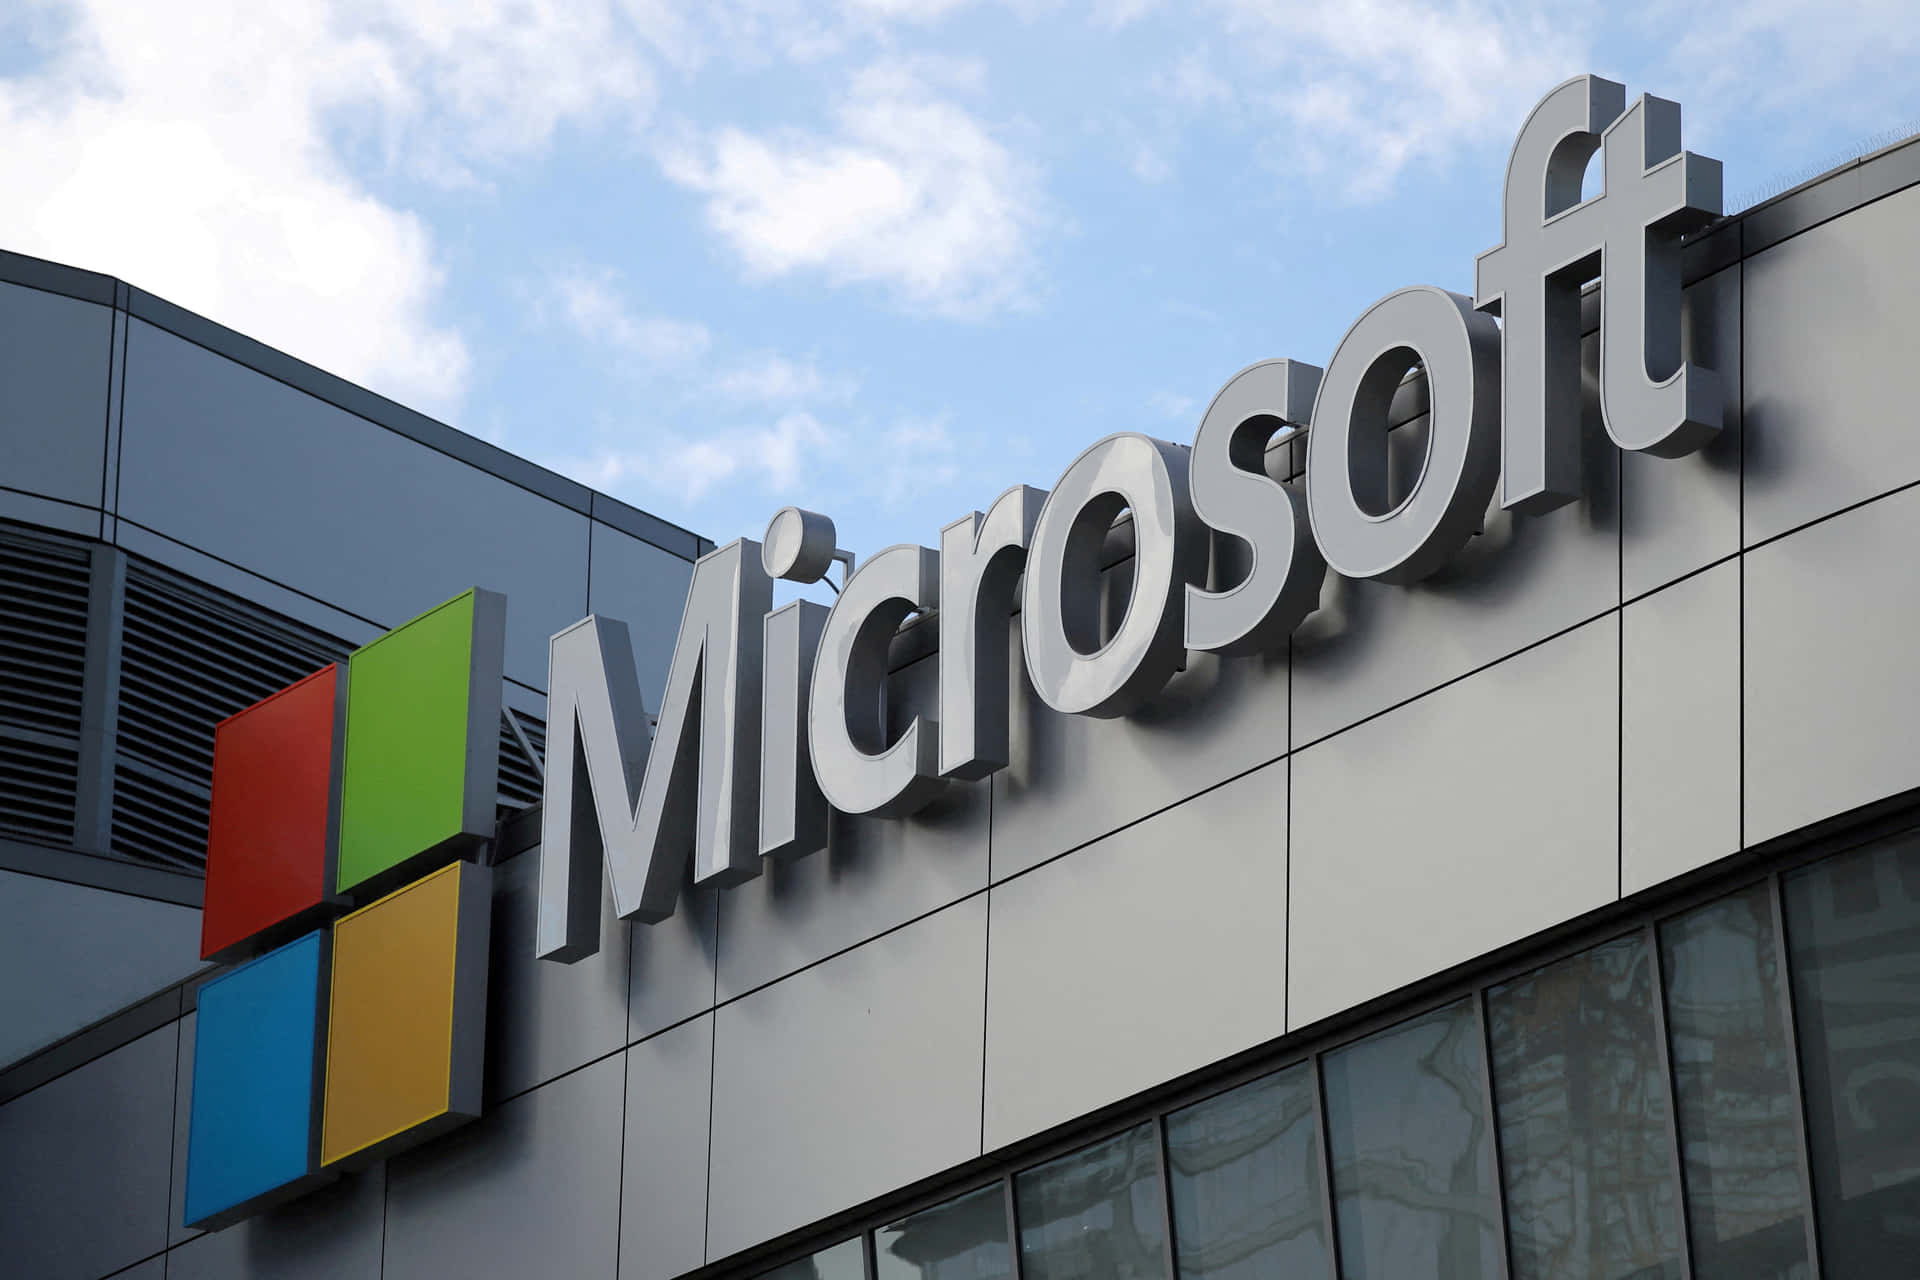 Microsoftliefert Die Neuesten Innovationen, Um Der Konkurrenz Einen Schritt Voraus Zu Sein.